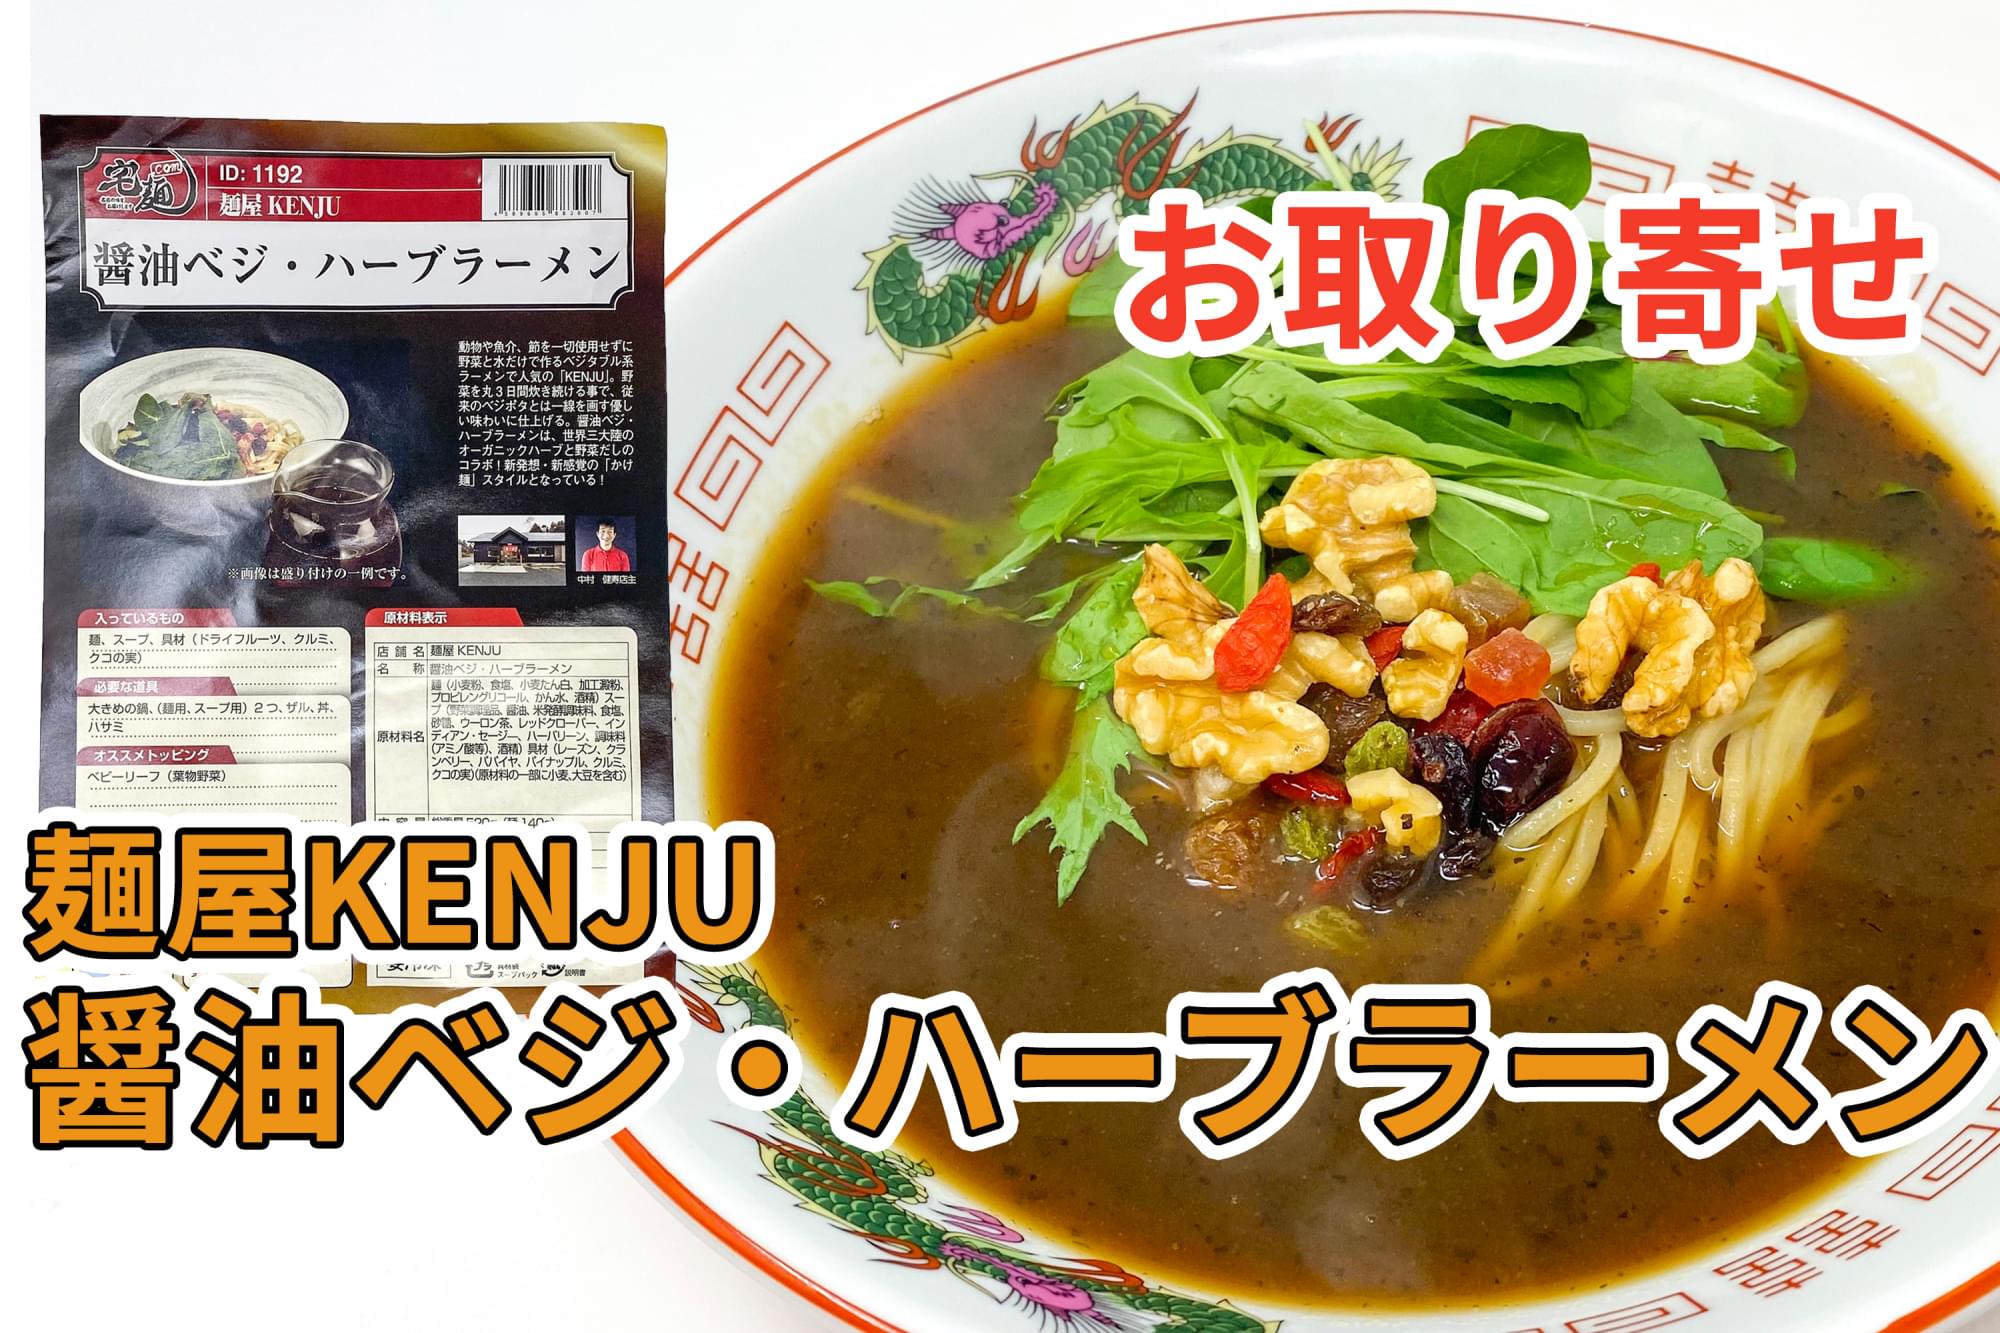 宅麺の 麺屋kenju 醤油ベジ ハーブラーメン を通販して食べた感想 ラーメン通販